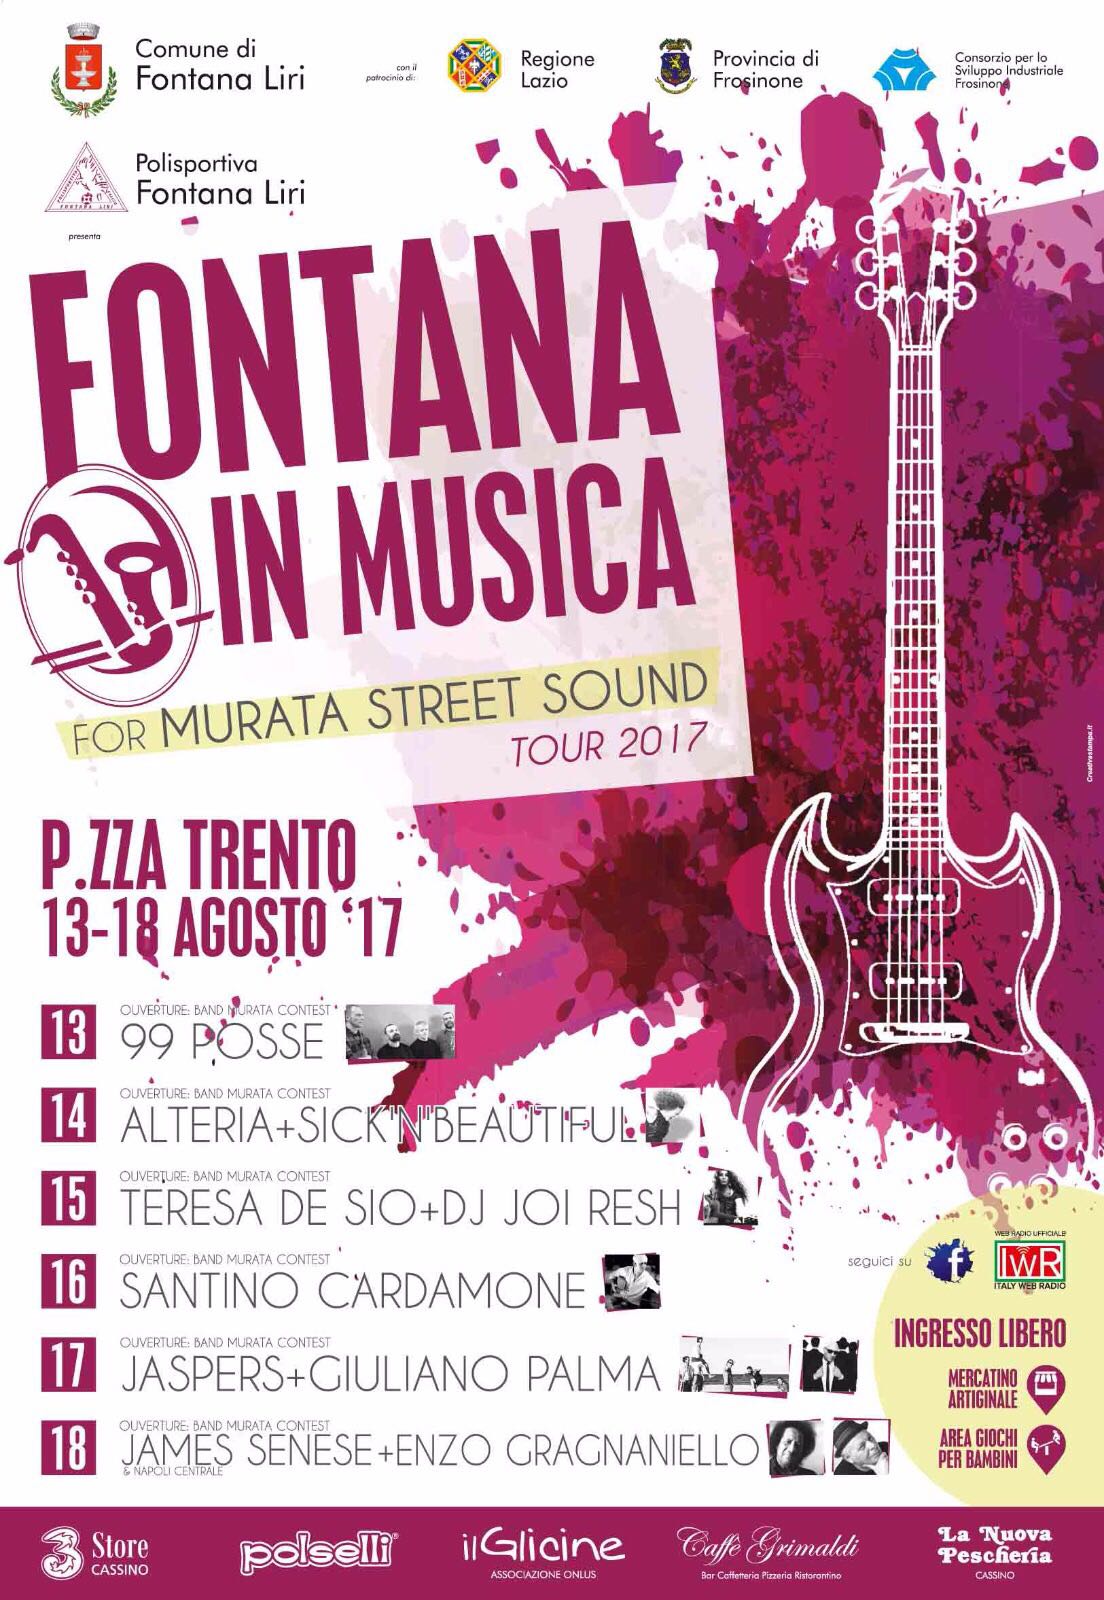 Italy Web Radio è la WEB RADIO UFFICIALE dell'evento FONTANA IN MUSICA